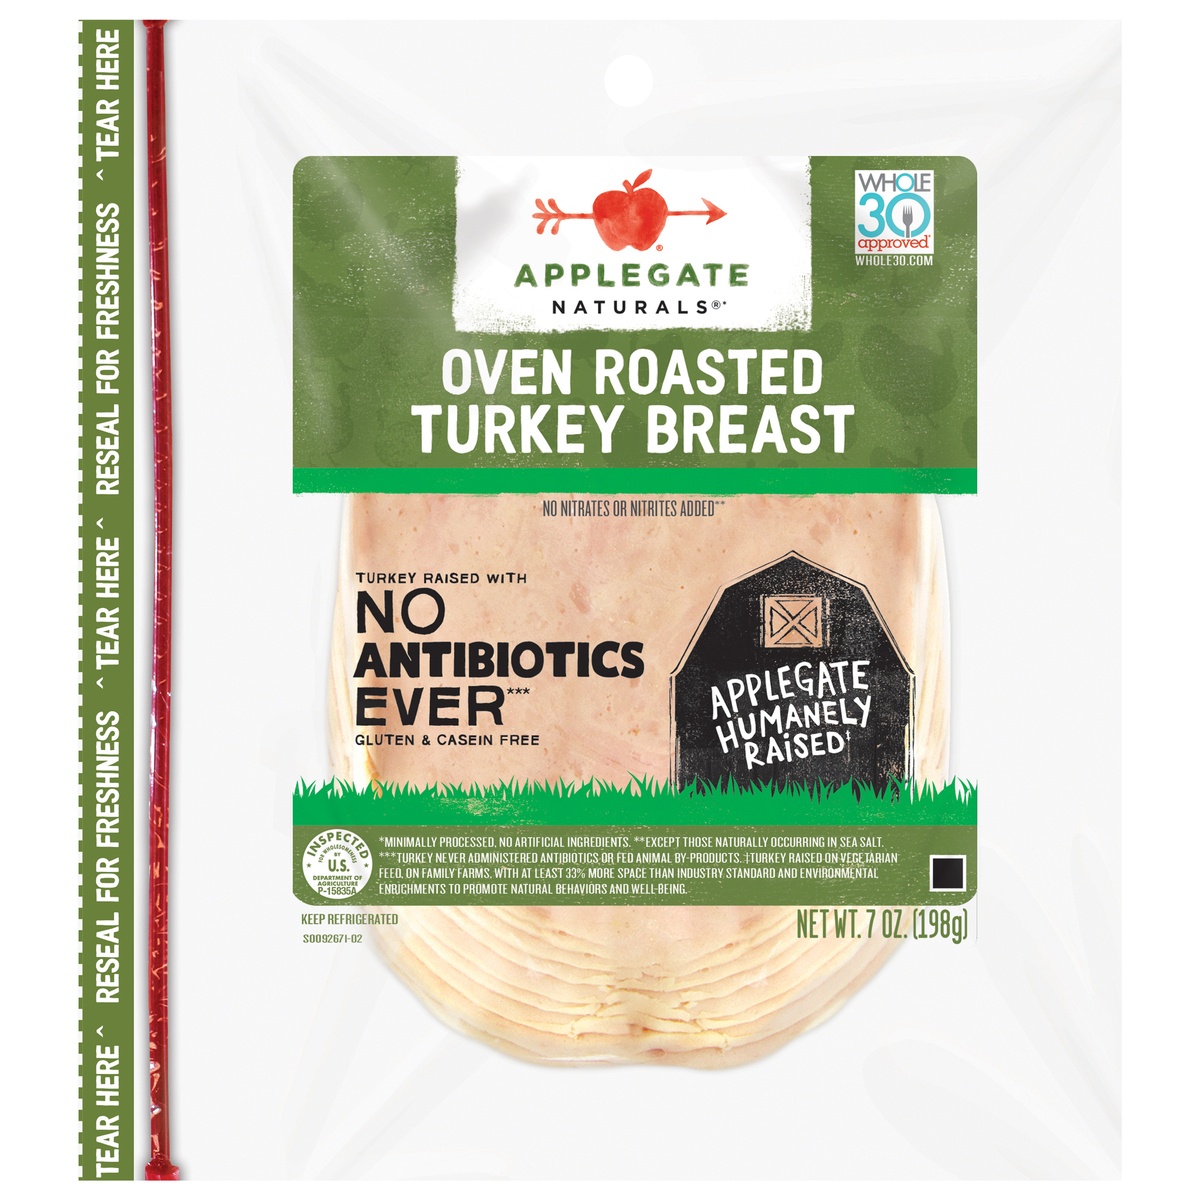 slide 1 of 9, Applegate Natural Oven Roasted Turkey Breast Sliced, 7.0 oz